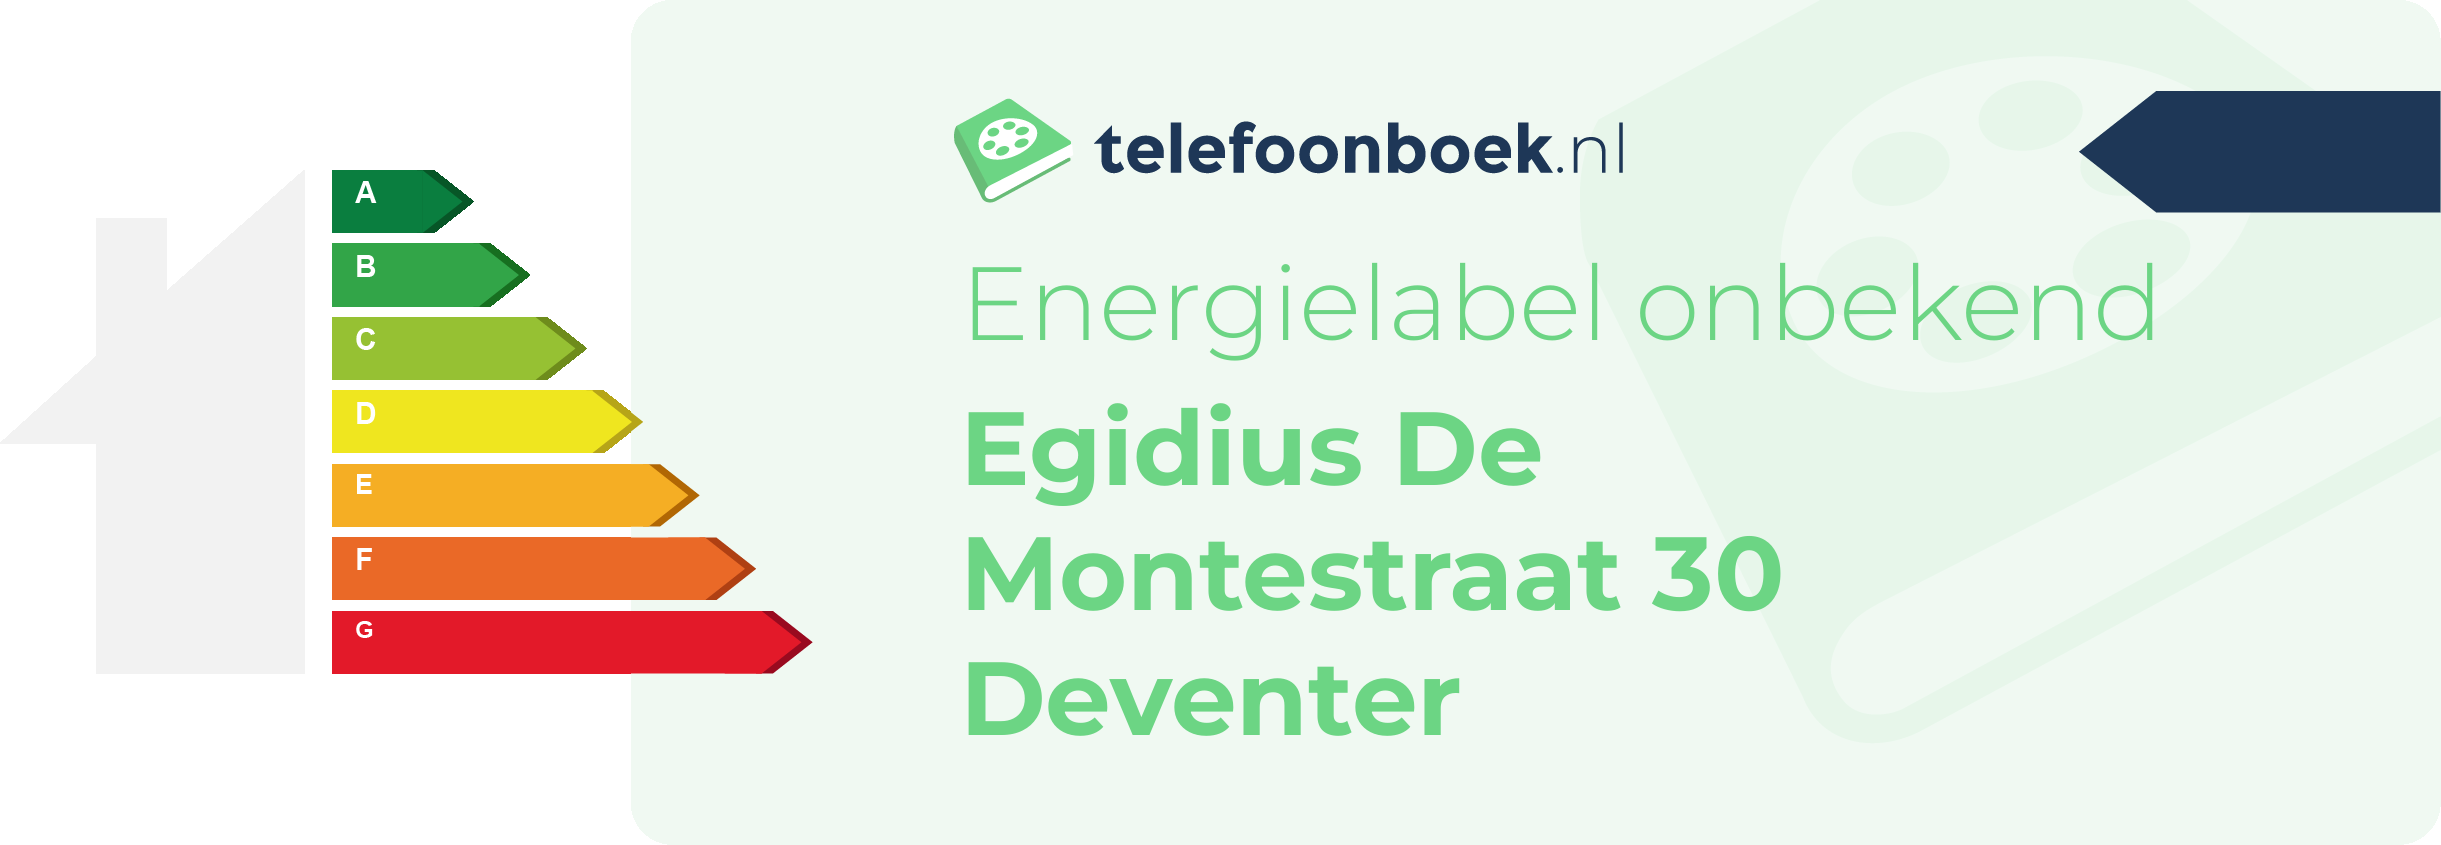 Energielabel Egidius De Montestraat 30 Deventer